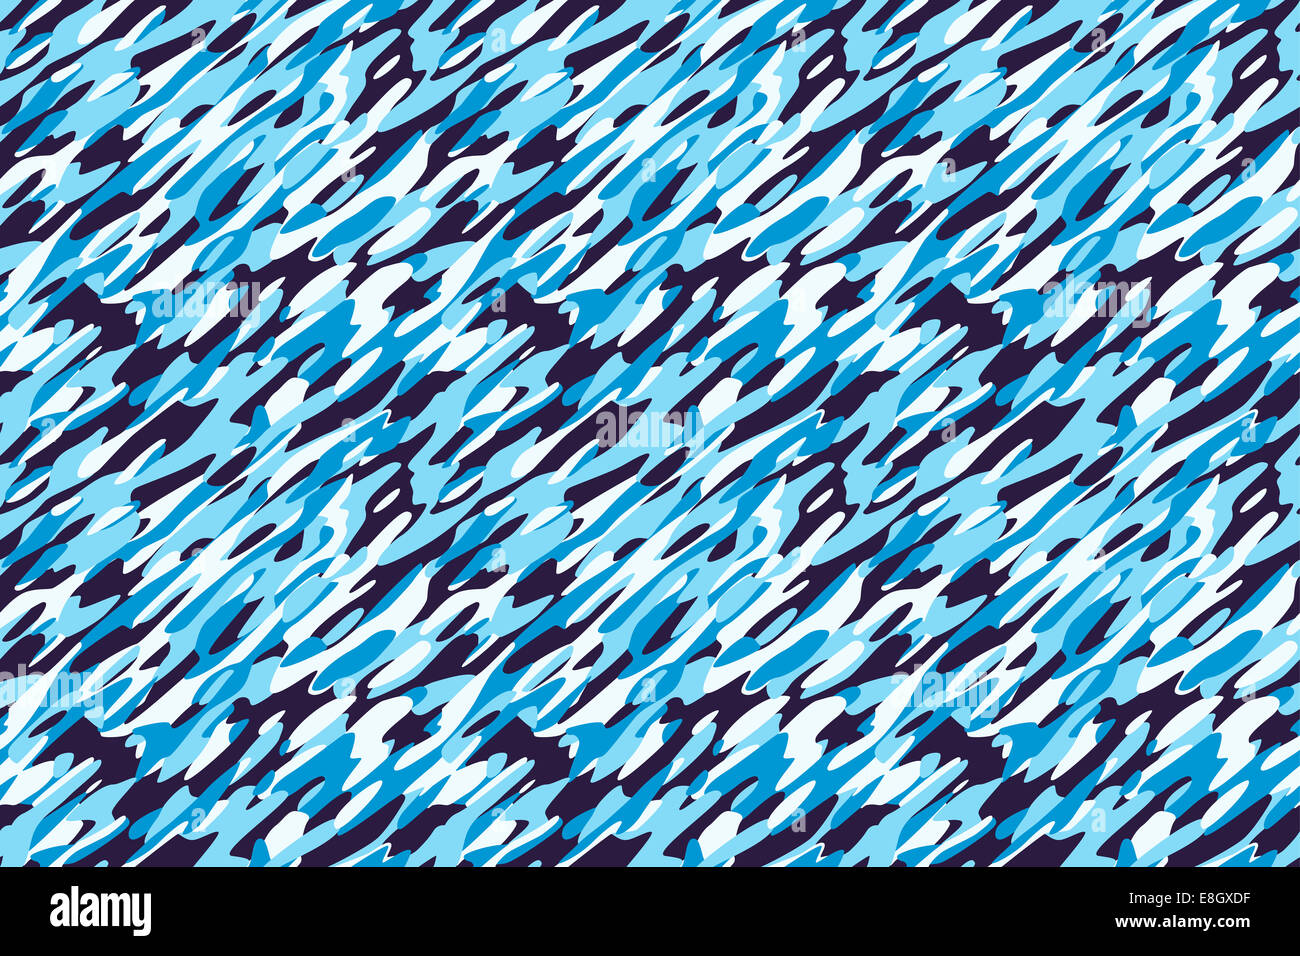 Camouflage Winter Snow White Blue Background - militärische Tarnmuster Textil. Allen Seiten zusammenpassen perfekt nahtlos. Stockfoto